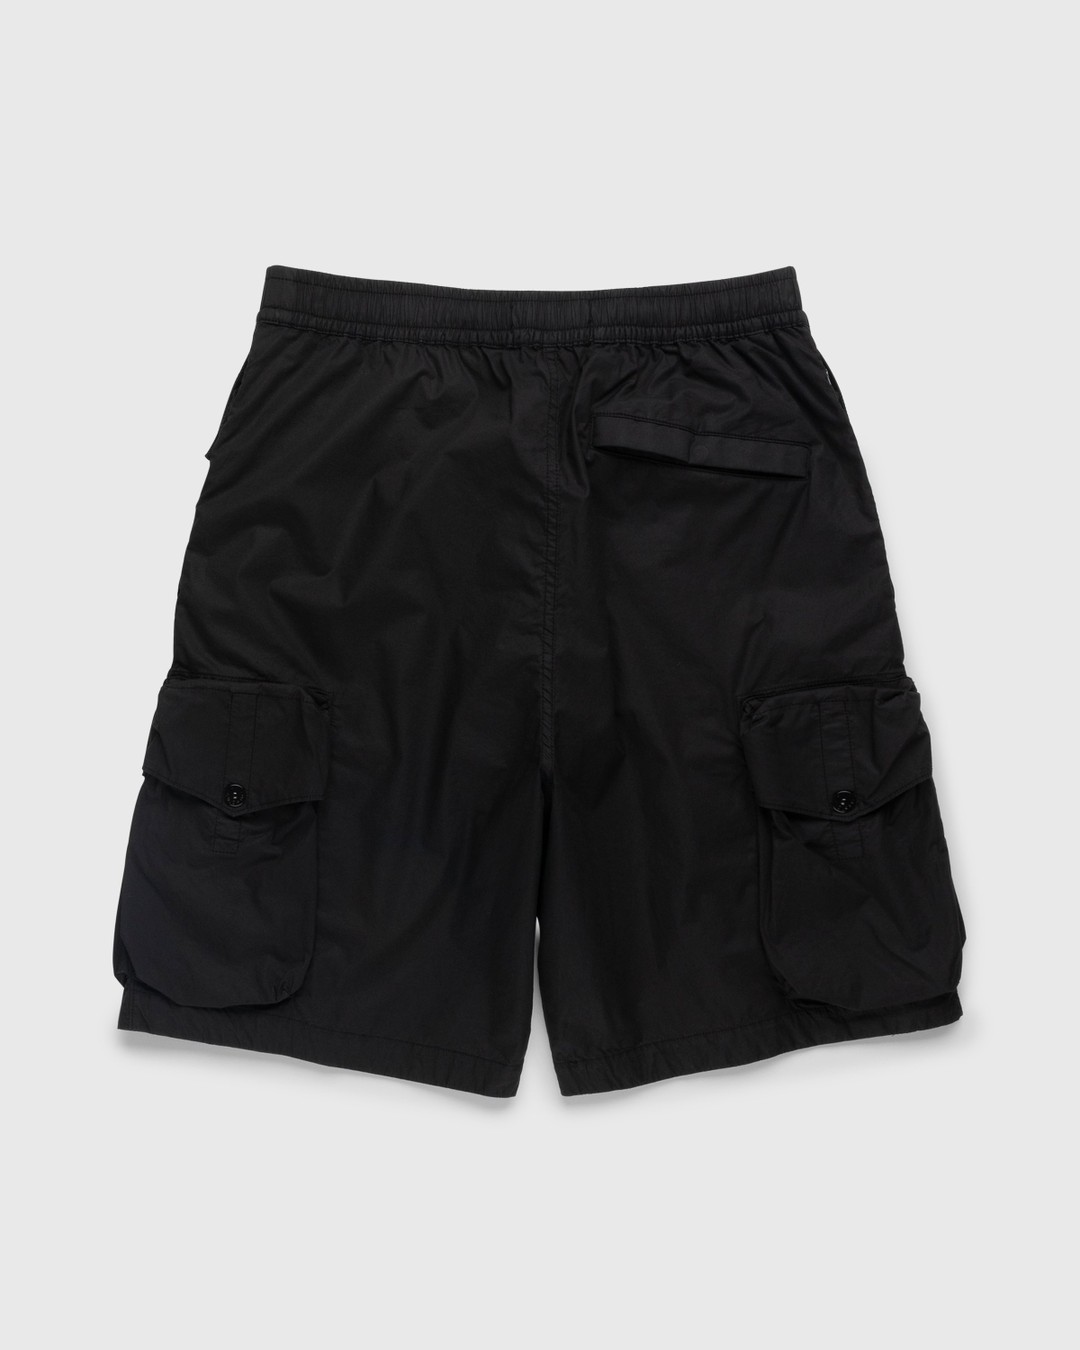 Stone Island – L0103 Garment-Dyed Shorts Black - Shorts - Black - Image 2